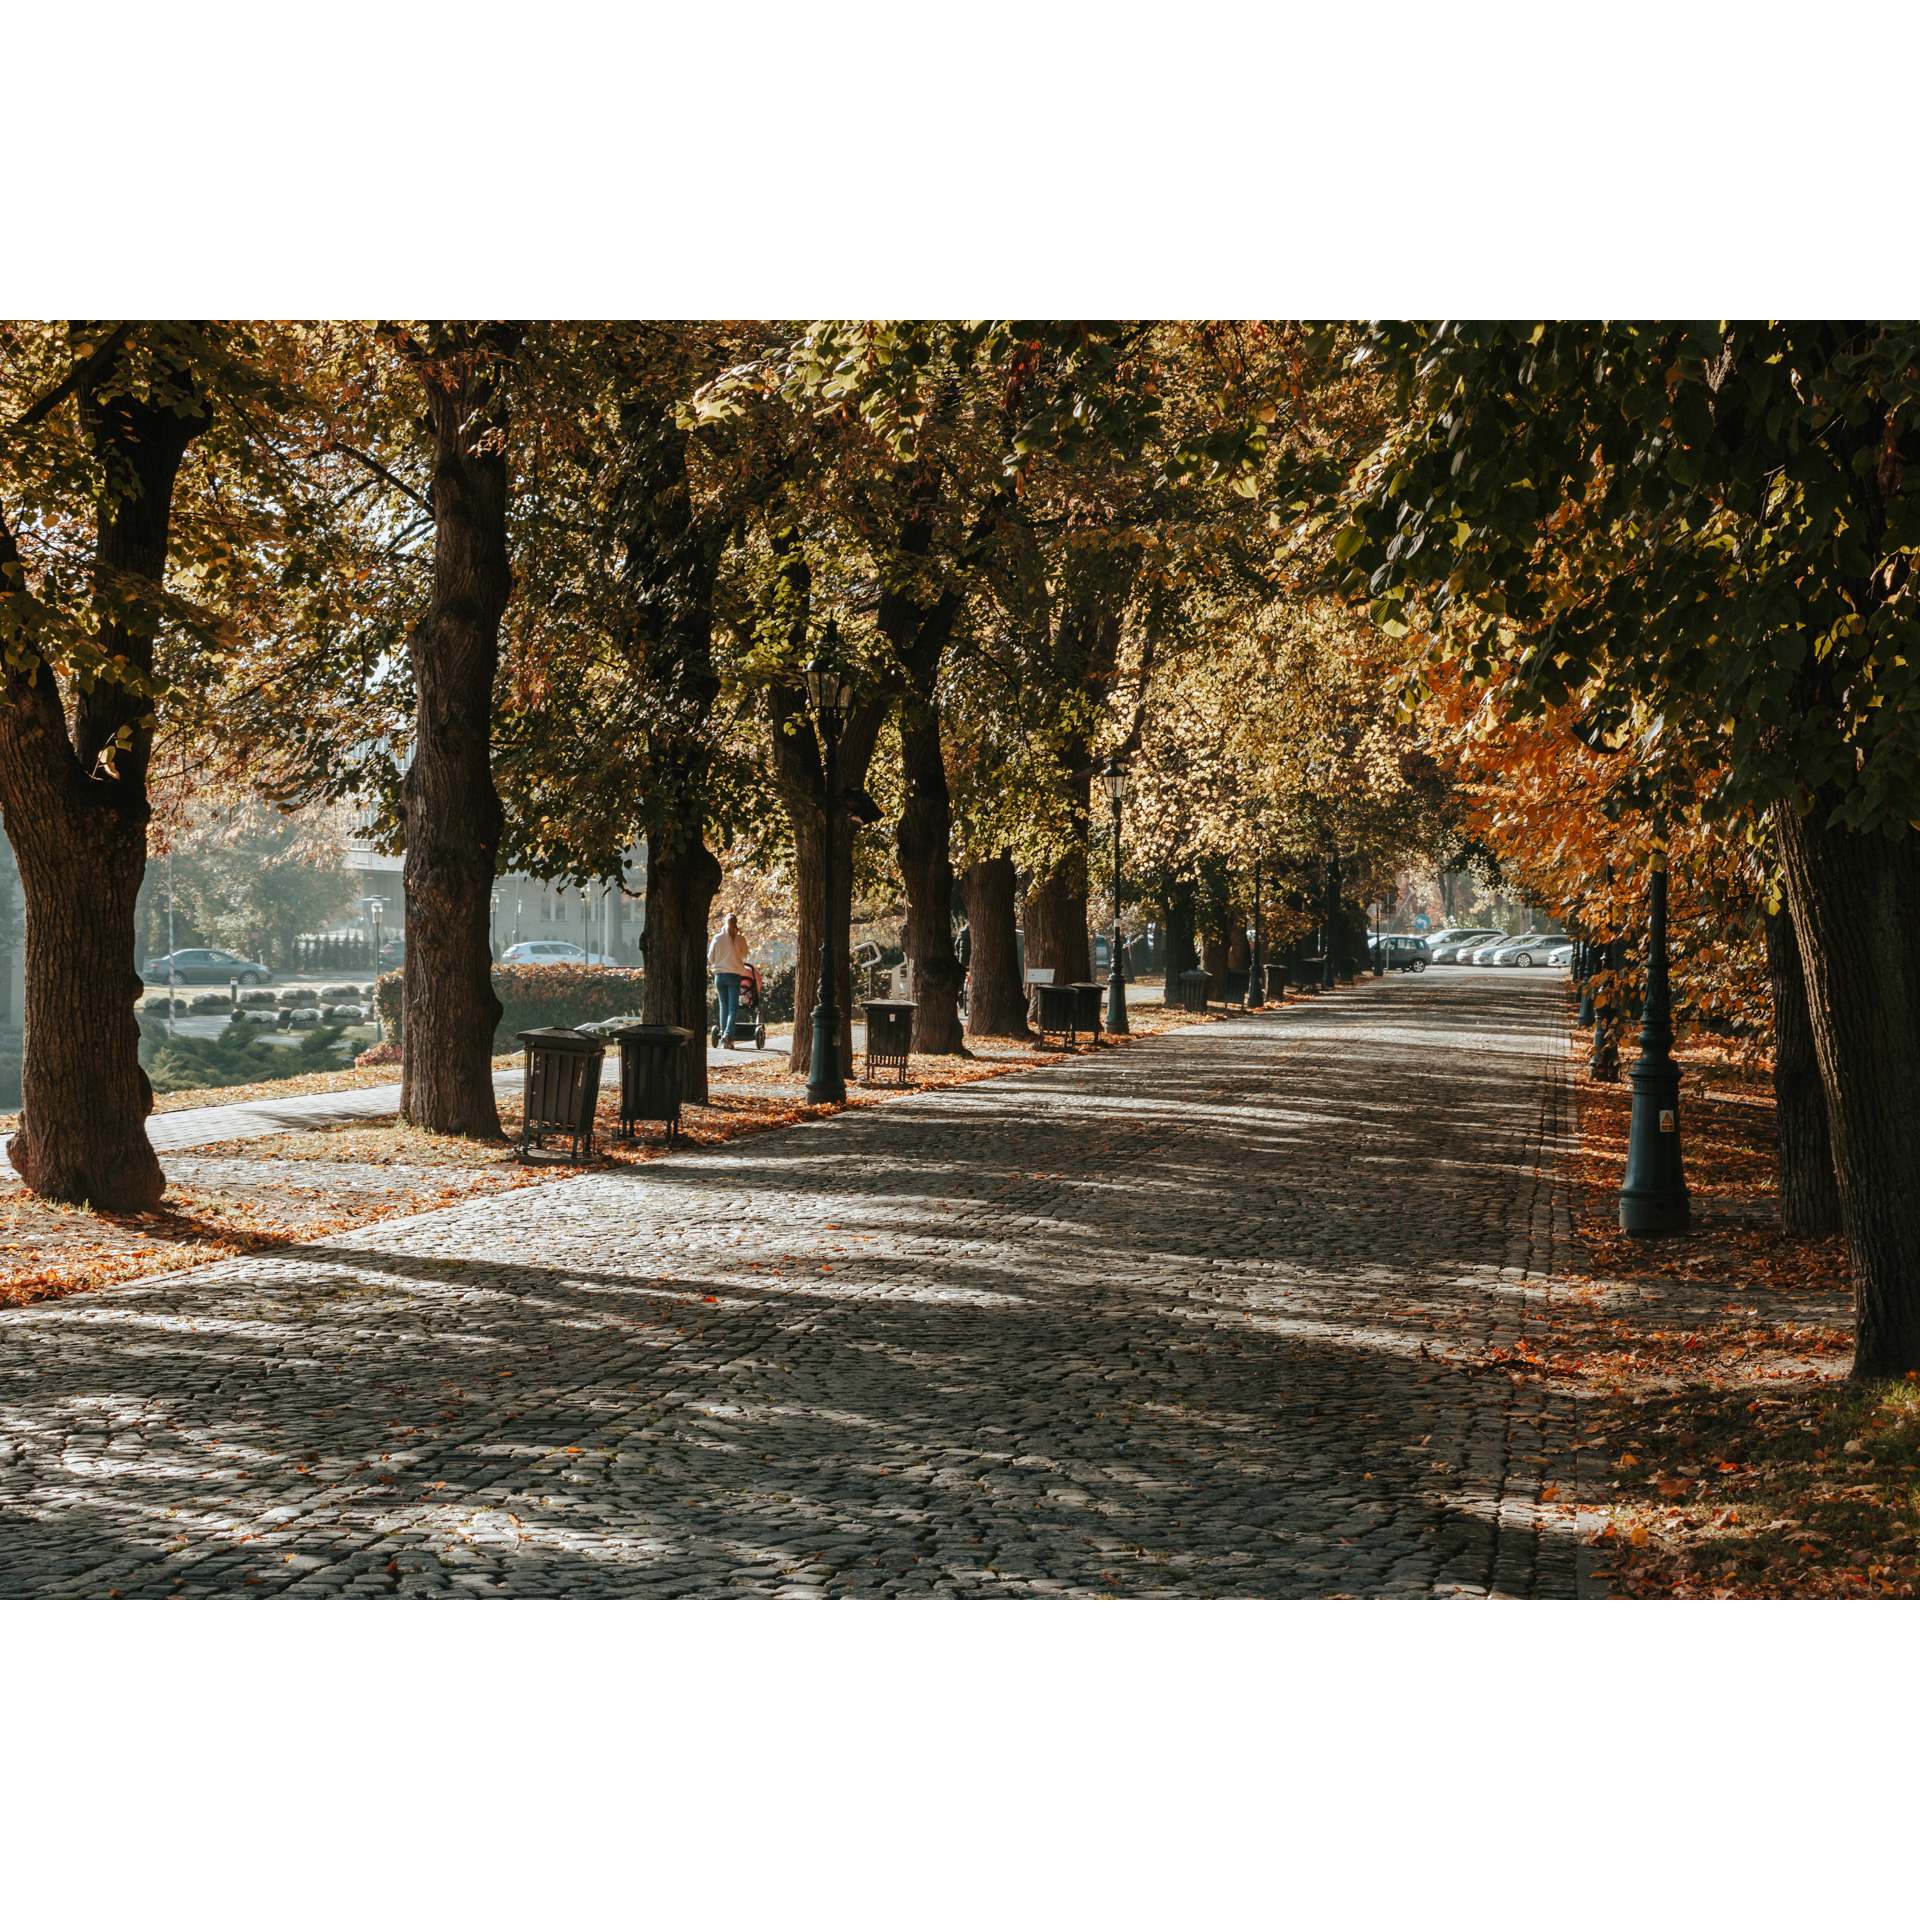 Droga wyłożona kamienną kostką prowadząca przez aleję jesiennych, zielono-żółtych drzew 